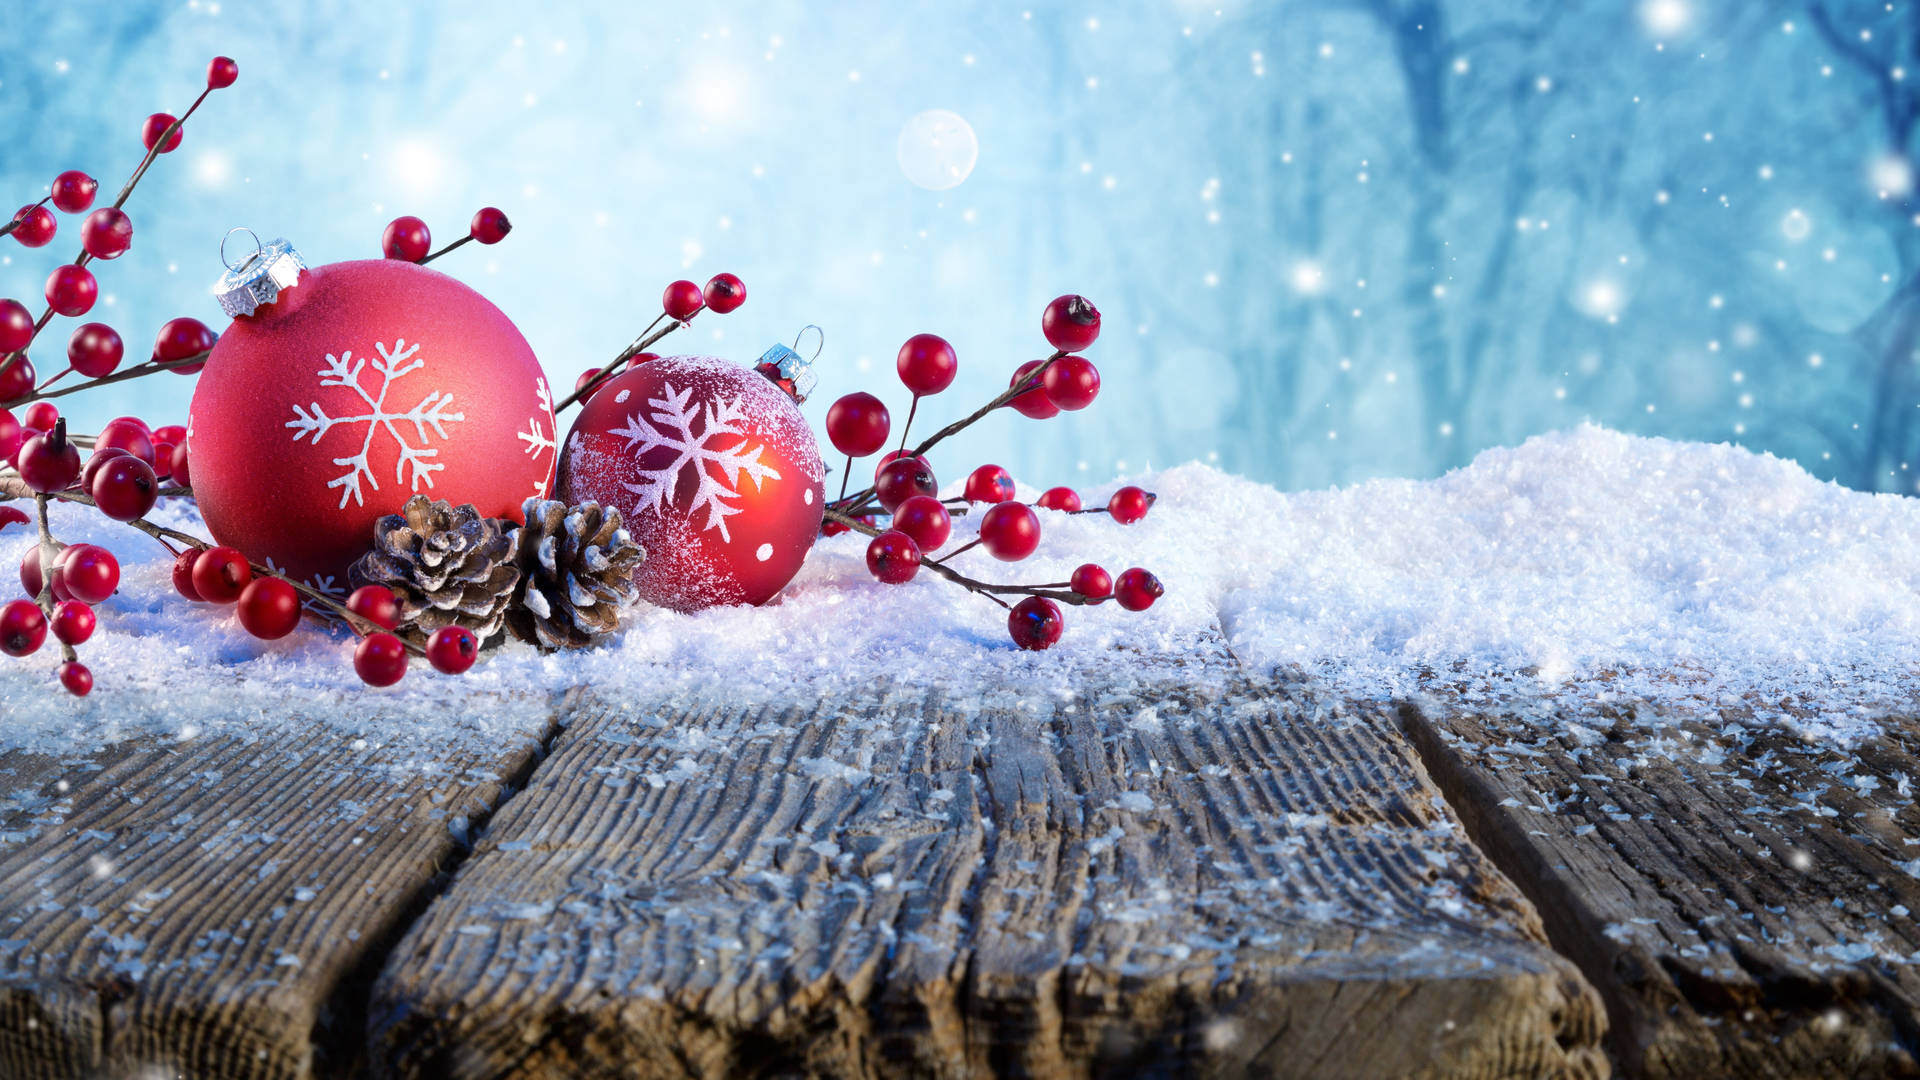 Hãy thưởng thức hình nền Giáng sinh 5K tuyệt đẹp để khiến cho màn hình của bạn thêm sáng đẹp và long lanh trong không khí đón chào lễ hội. Những hình ảnh sắc nét và sống động sẽ đưa bạn đến một thế giới Giáng sinh đầy ấm áp, tình cảm và hạnh phúc.